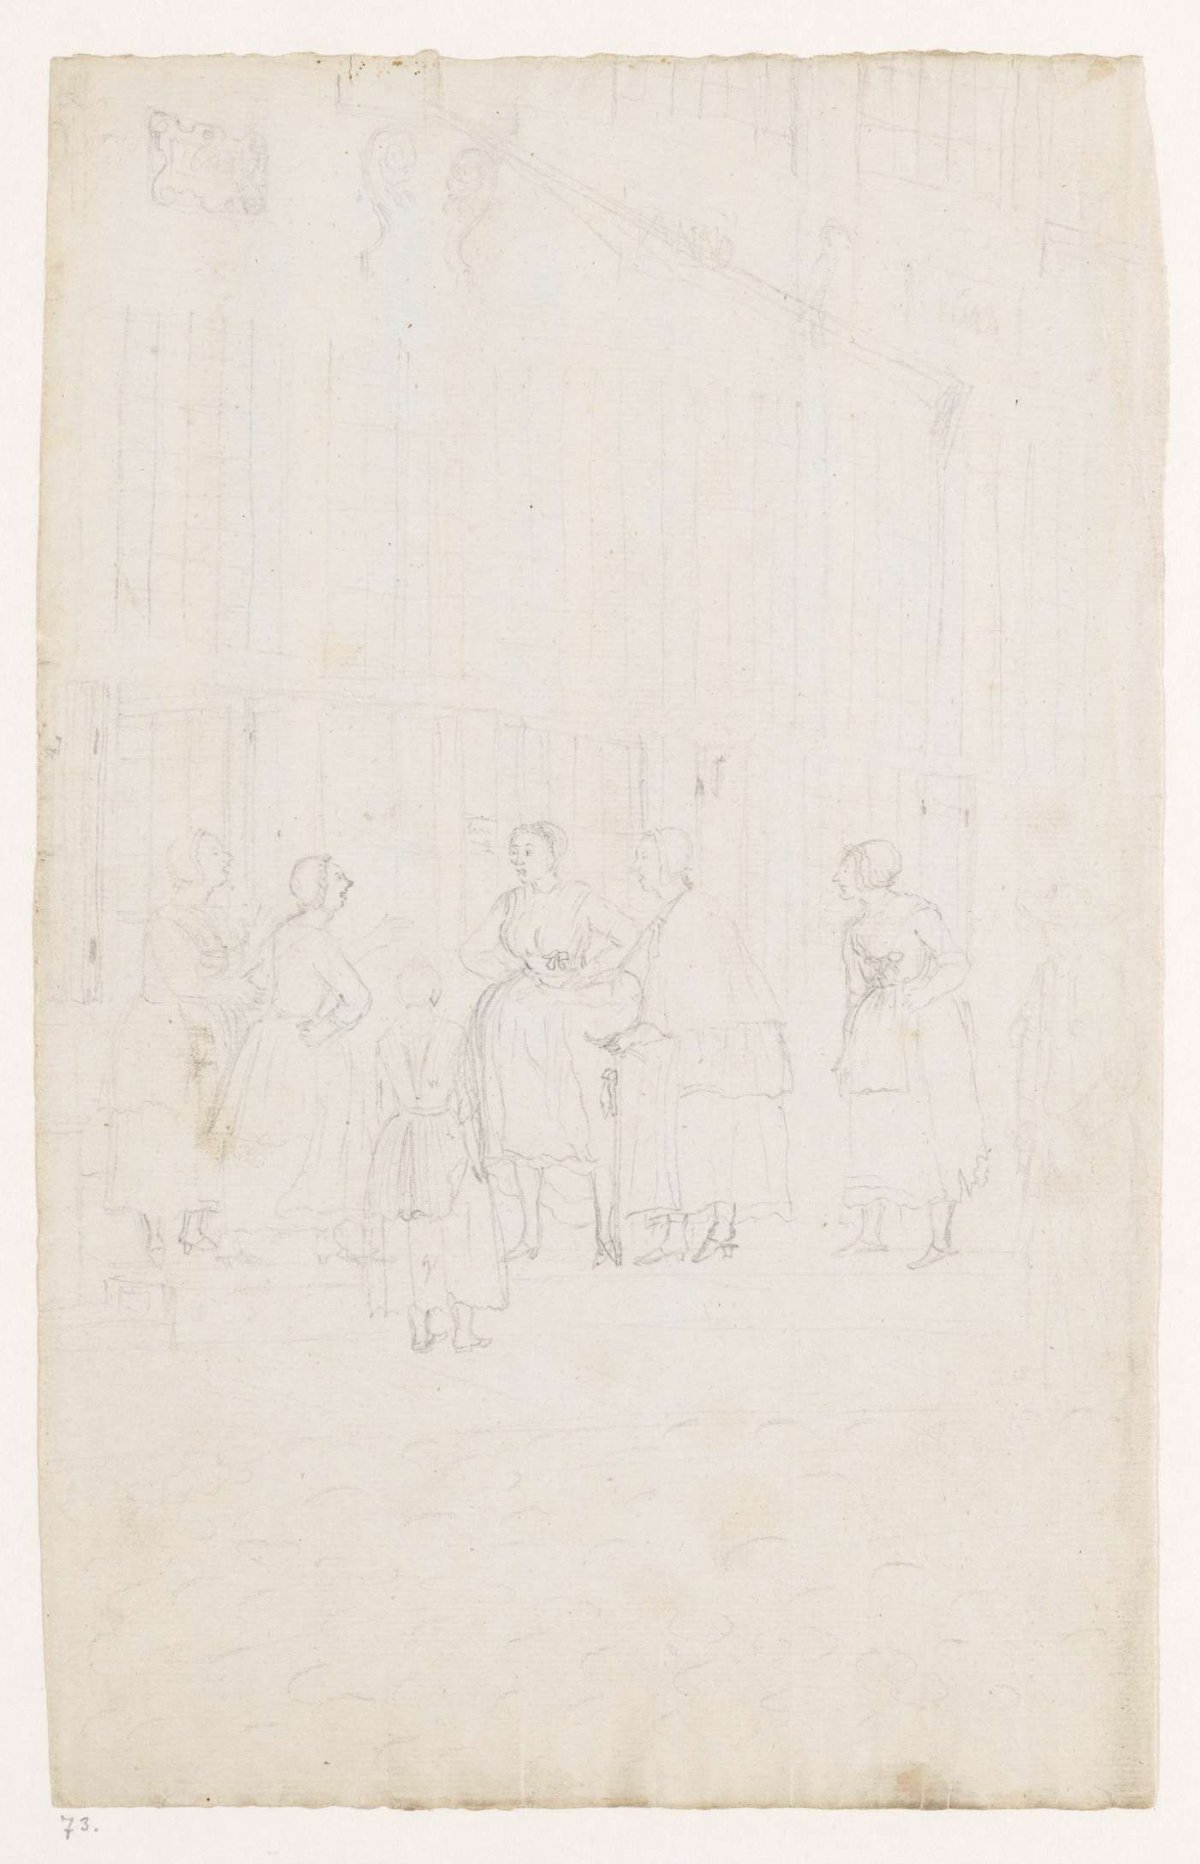 Women on the street, Jan Brandes, 1778